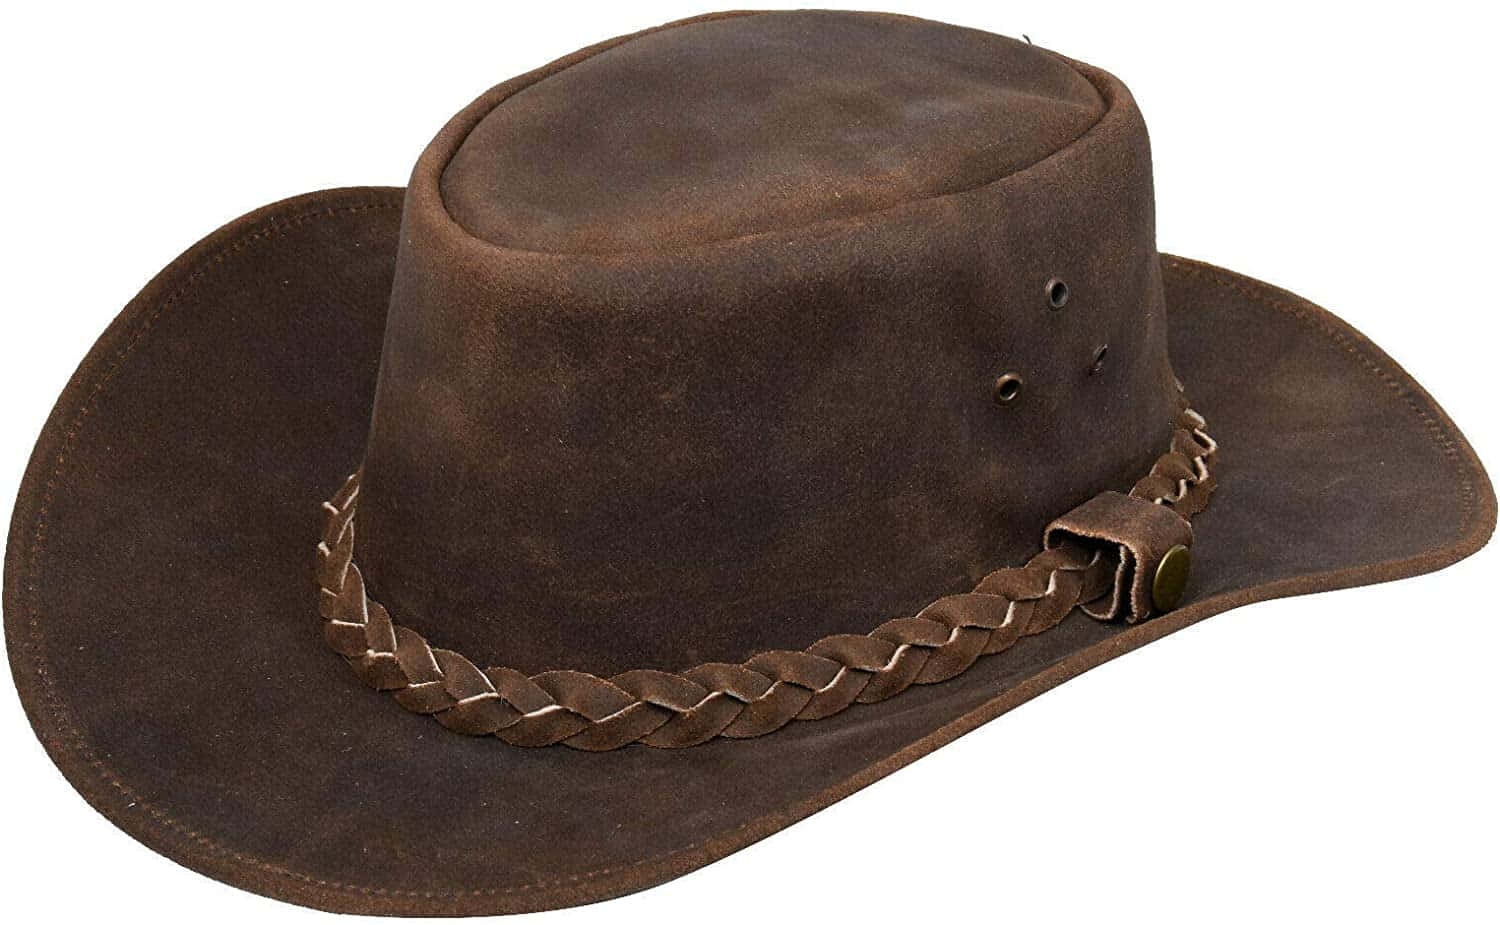 Icowboy Di Tutte Le Età Sicuramente Ameranno Questo Cappello Senza Tempo E Classico.